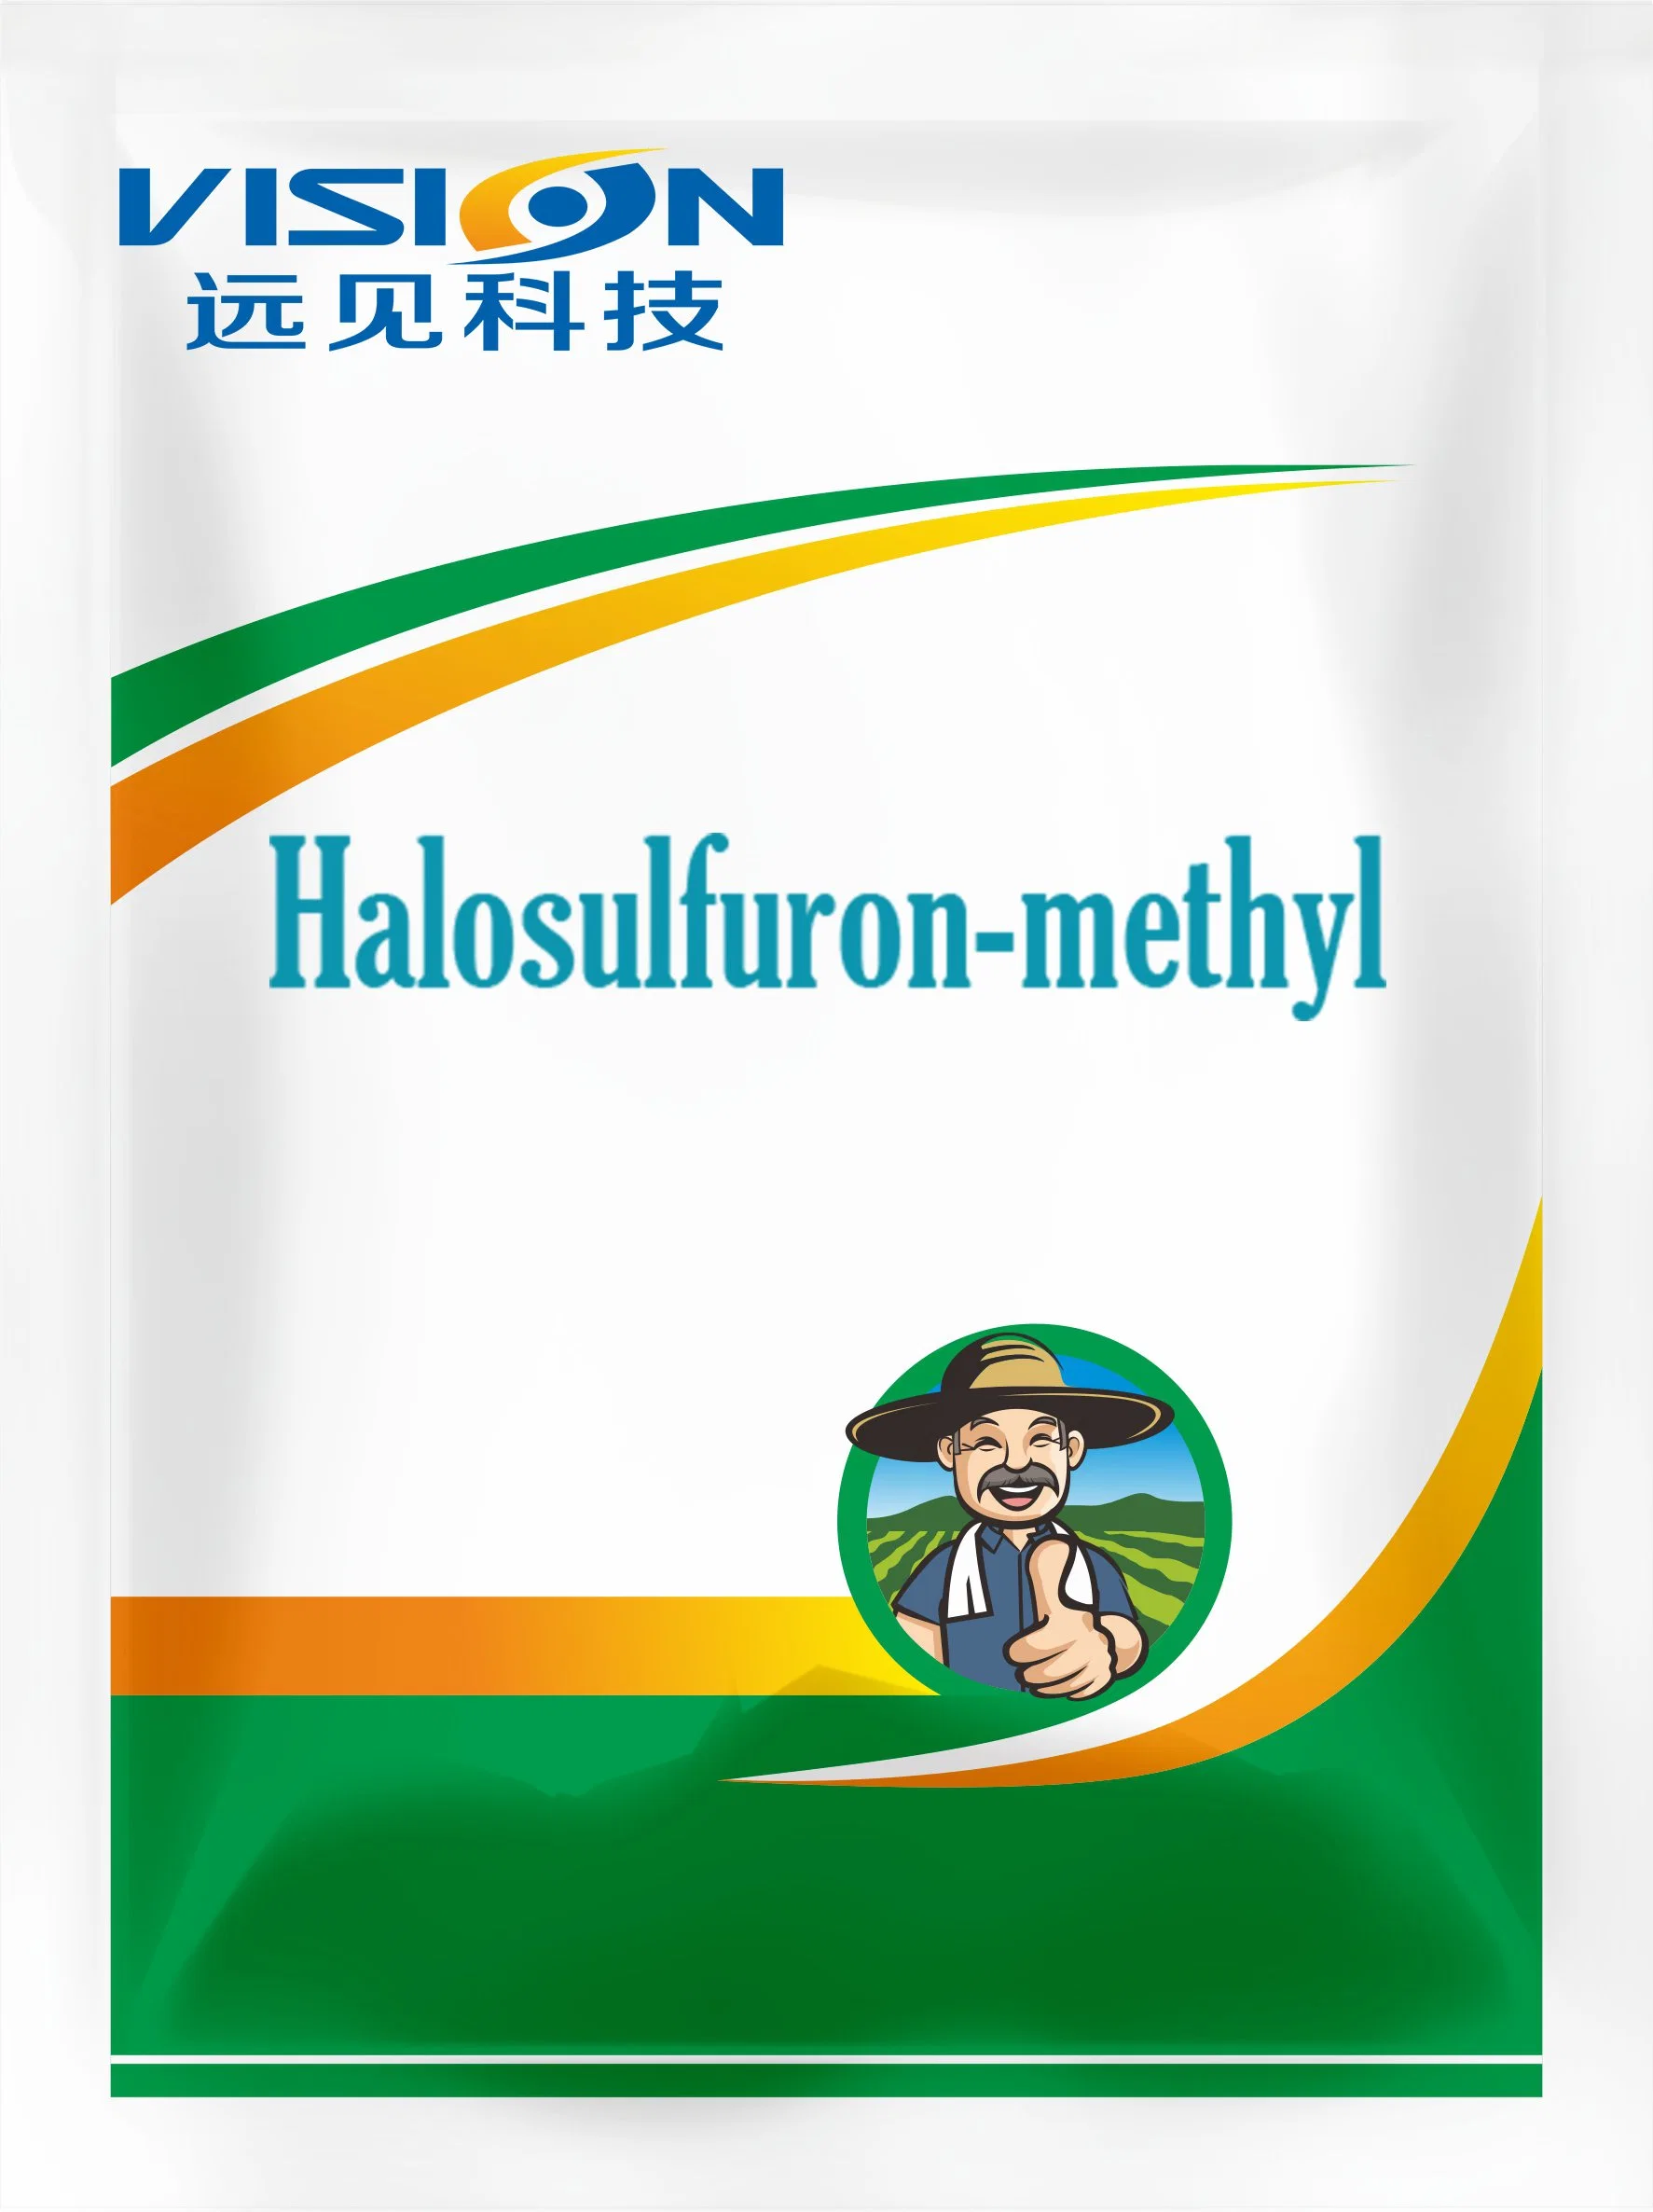 Vision Supply Herbizid Halosulfuron-Methyl 75%Wdg Reiherbizid Pyrazosulfuron-Ethyl Paddy Herbizide Für die Landwirtschaft